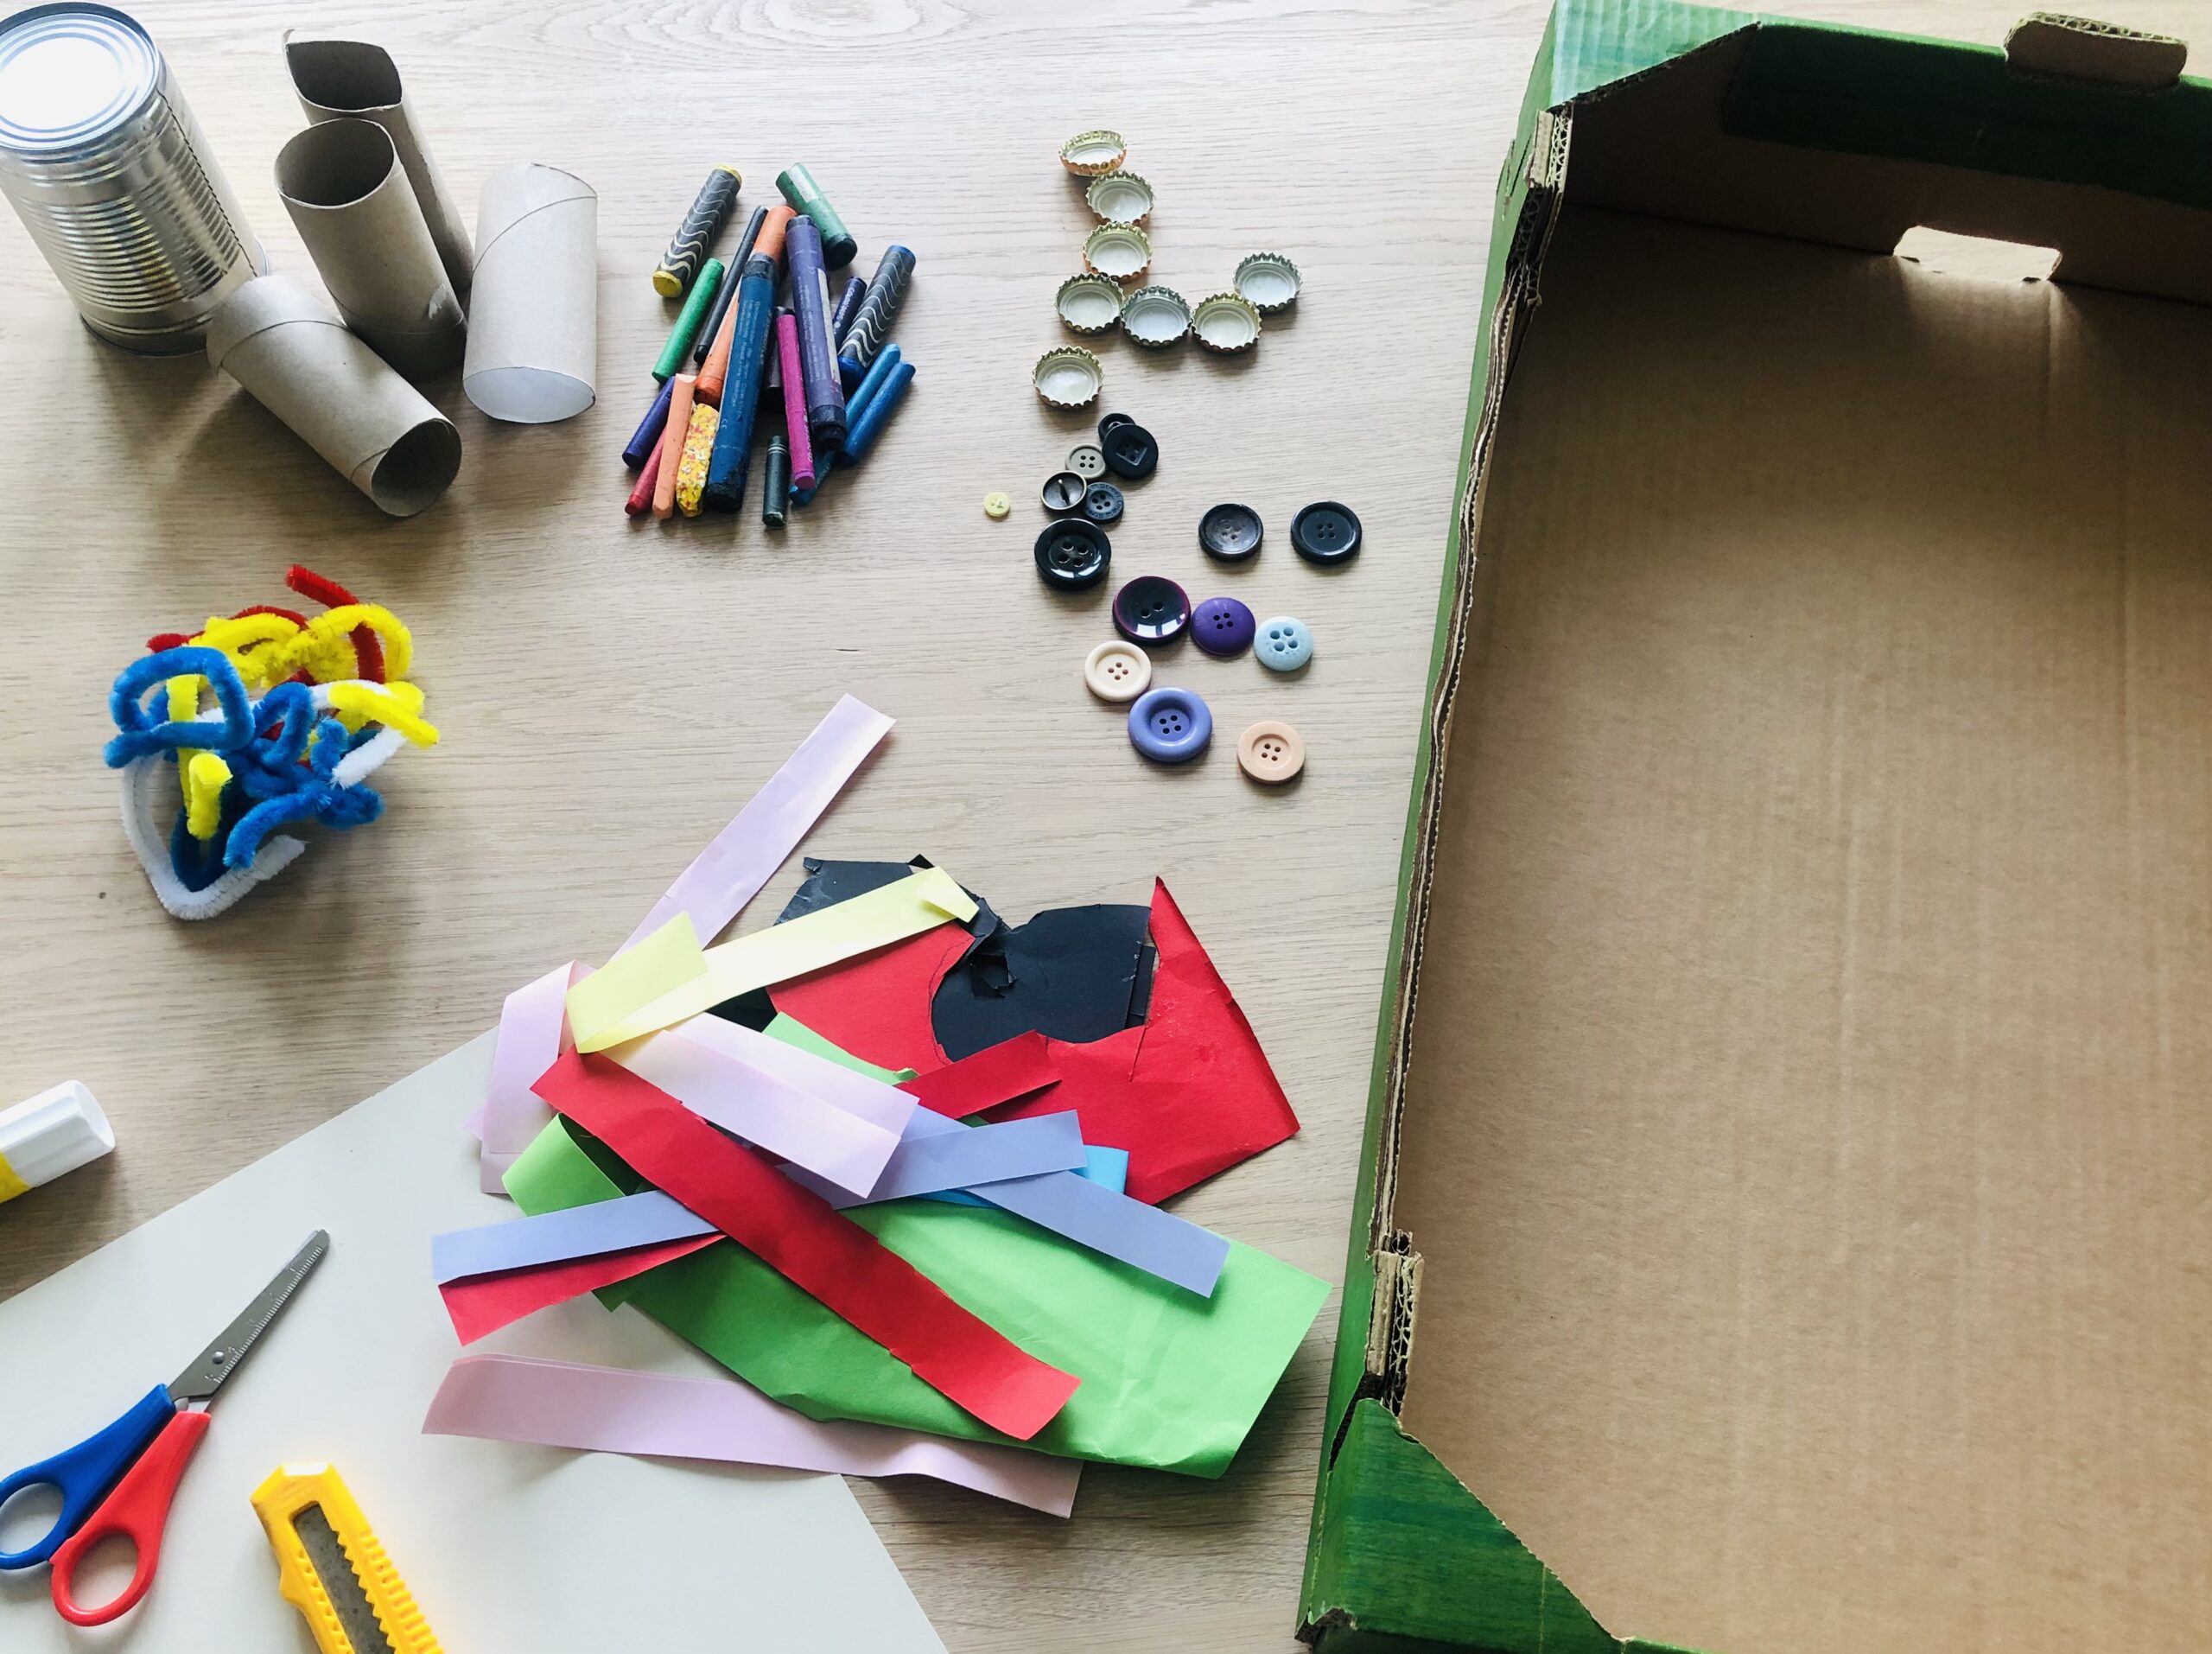 Bild zum Schritt 1 für das Bastel- und DIY-Abenteuer für Kinder: 'Sucht zuerst alle Materialien zusammen. Verwendet was ihr zuhause habt...'